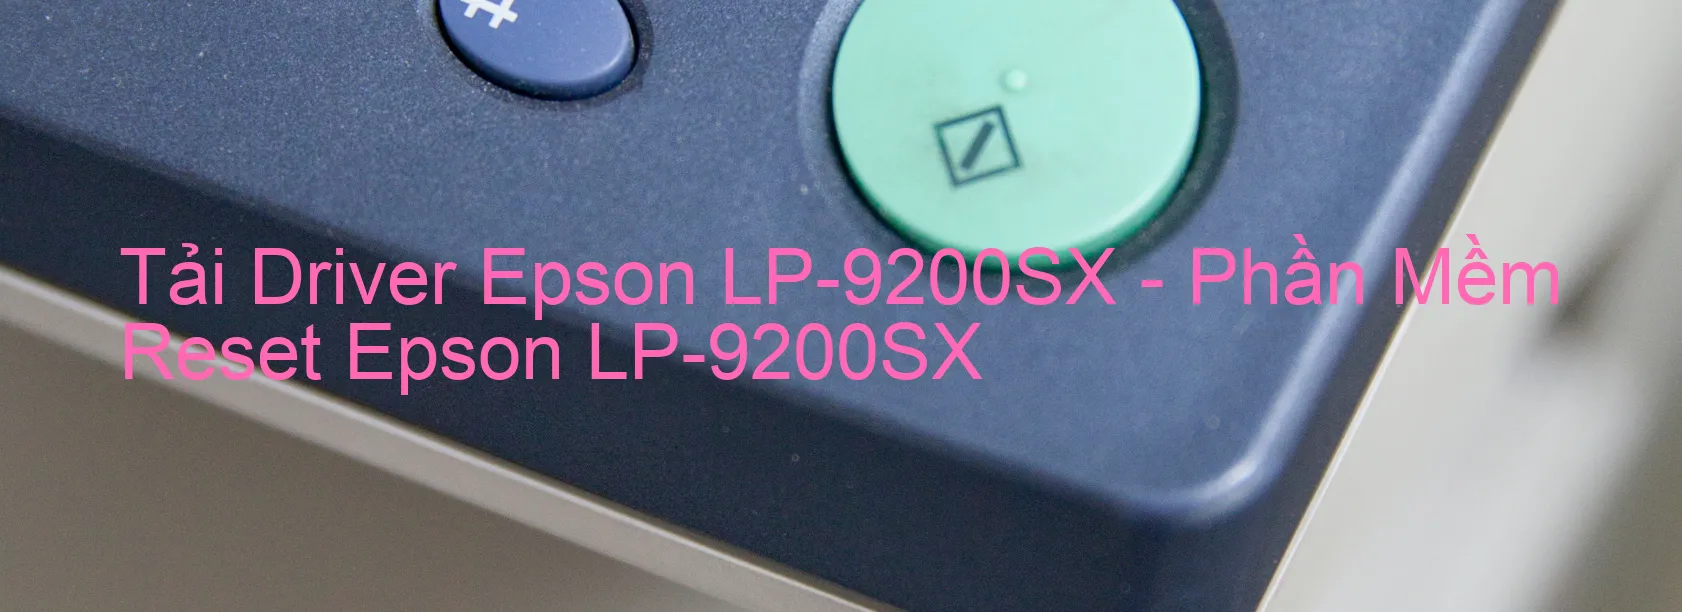 Driver Epson LP-9200SX, Phần Mềm Reset Epson LP-9200SX